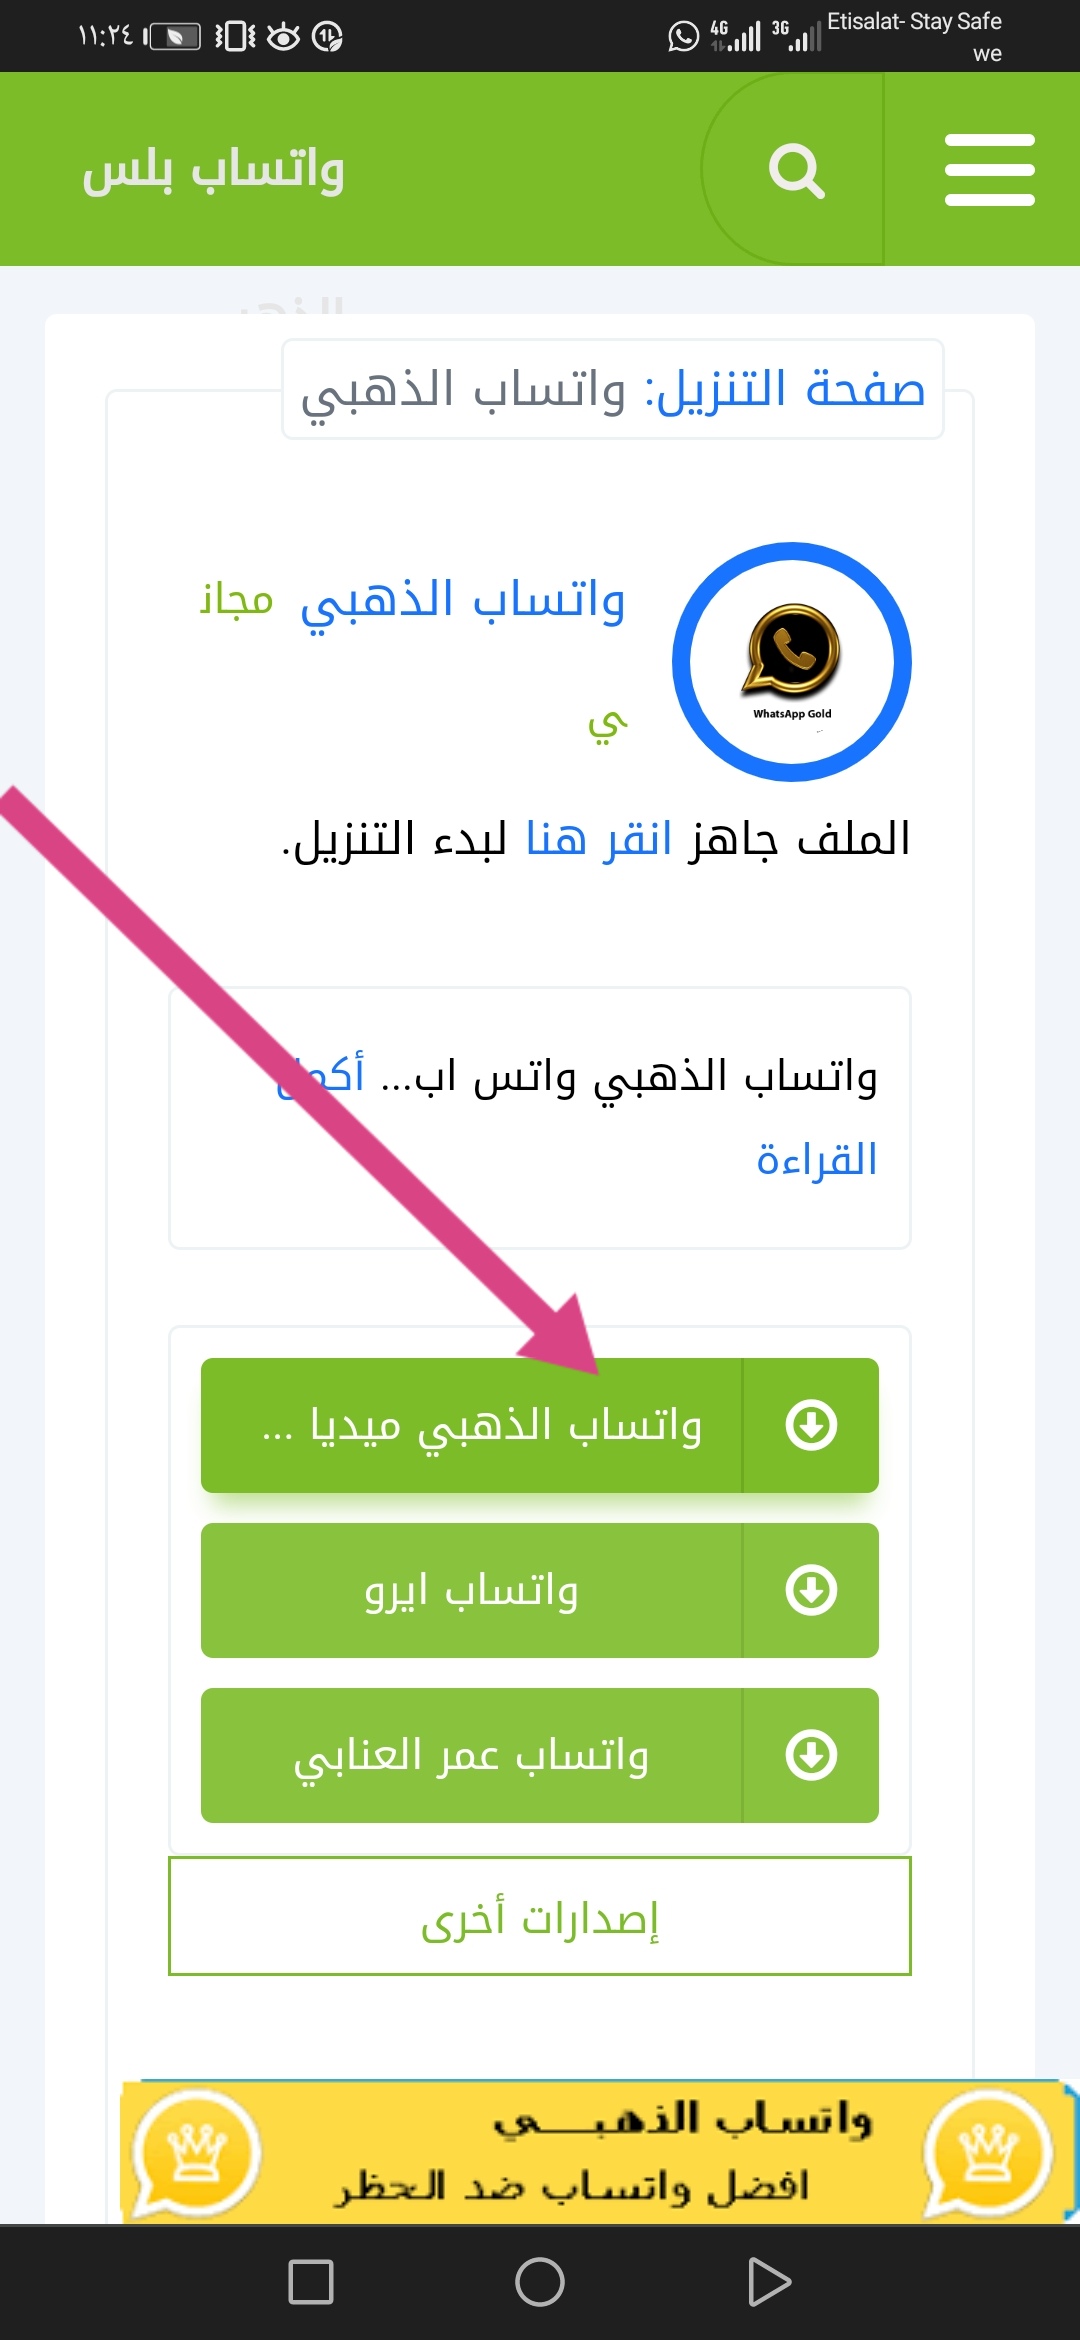 تحميل تطبيق واتساب الذهبي من الموقع الرسمي